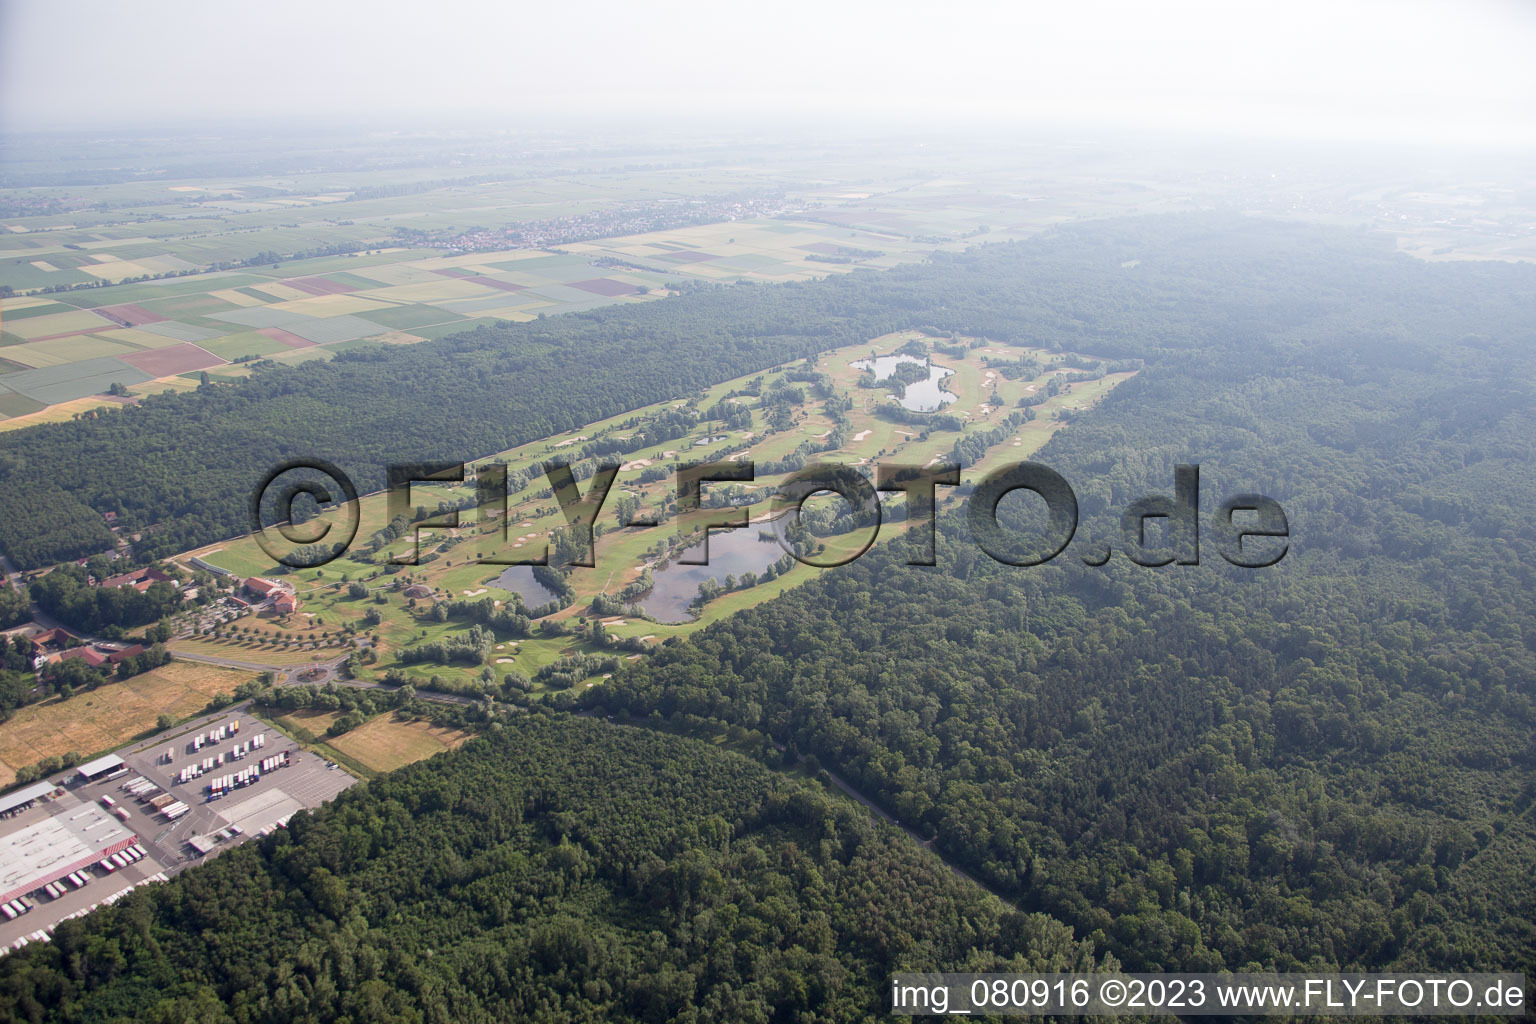 Vue aérienne de Terrain de golf à Essingen dans le département Rhénanie-Palatinat, Allemagne